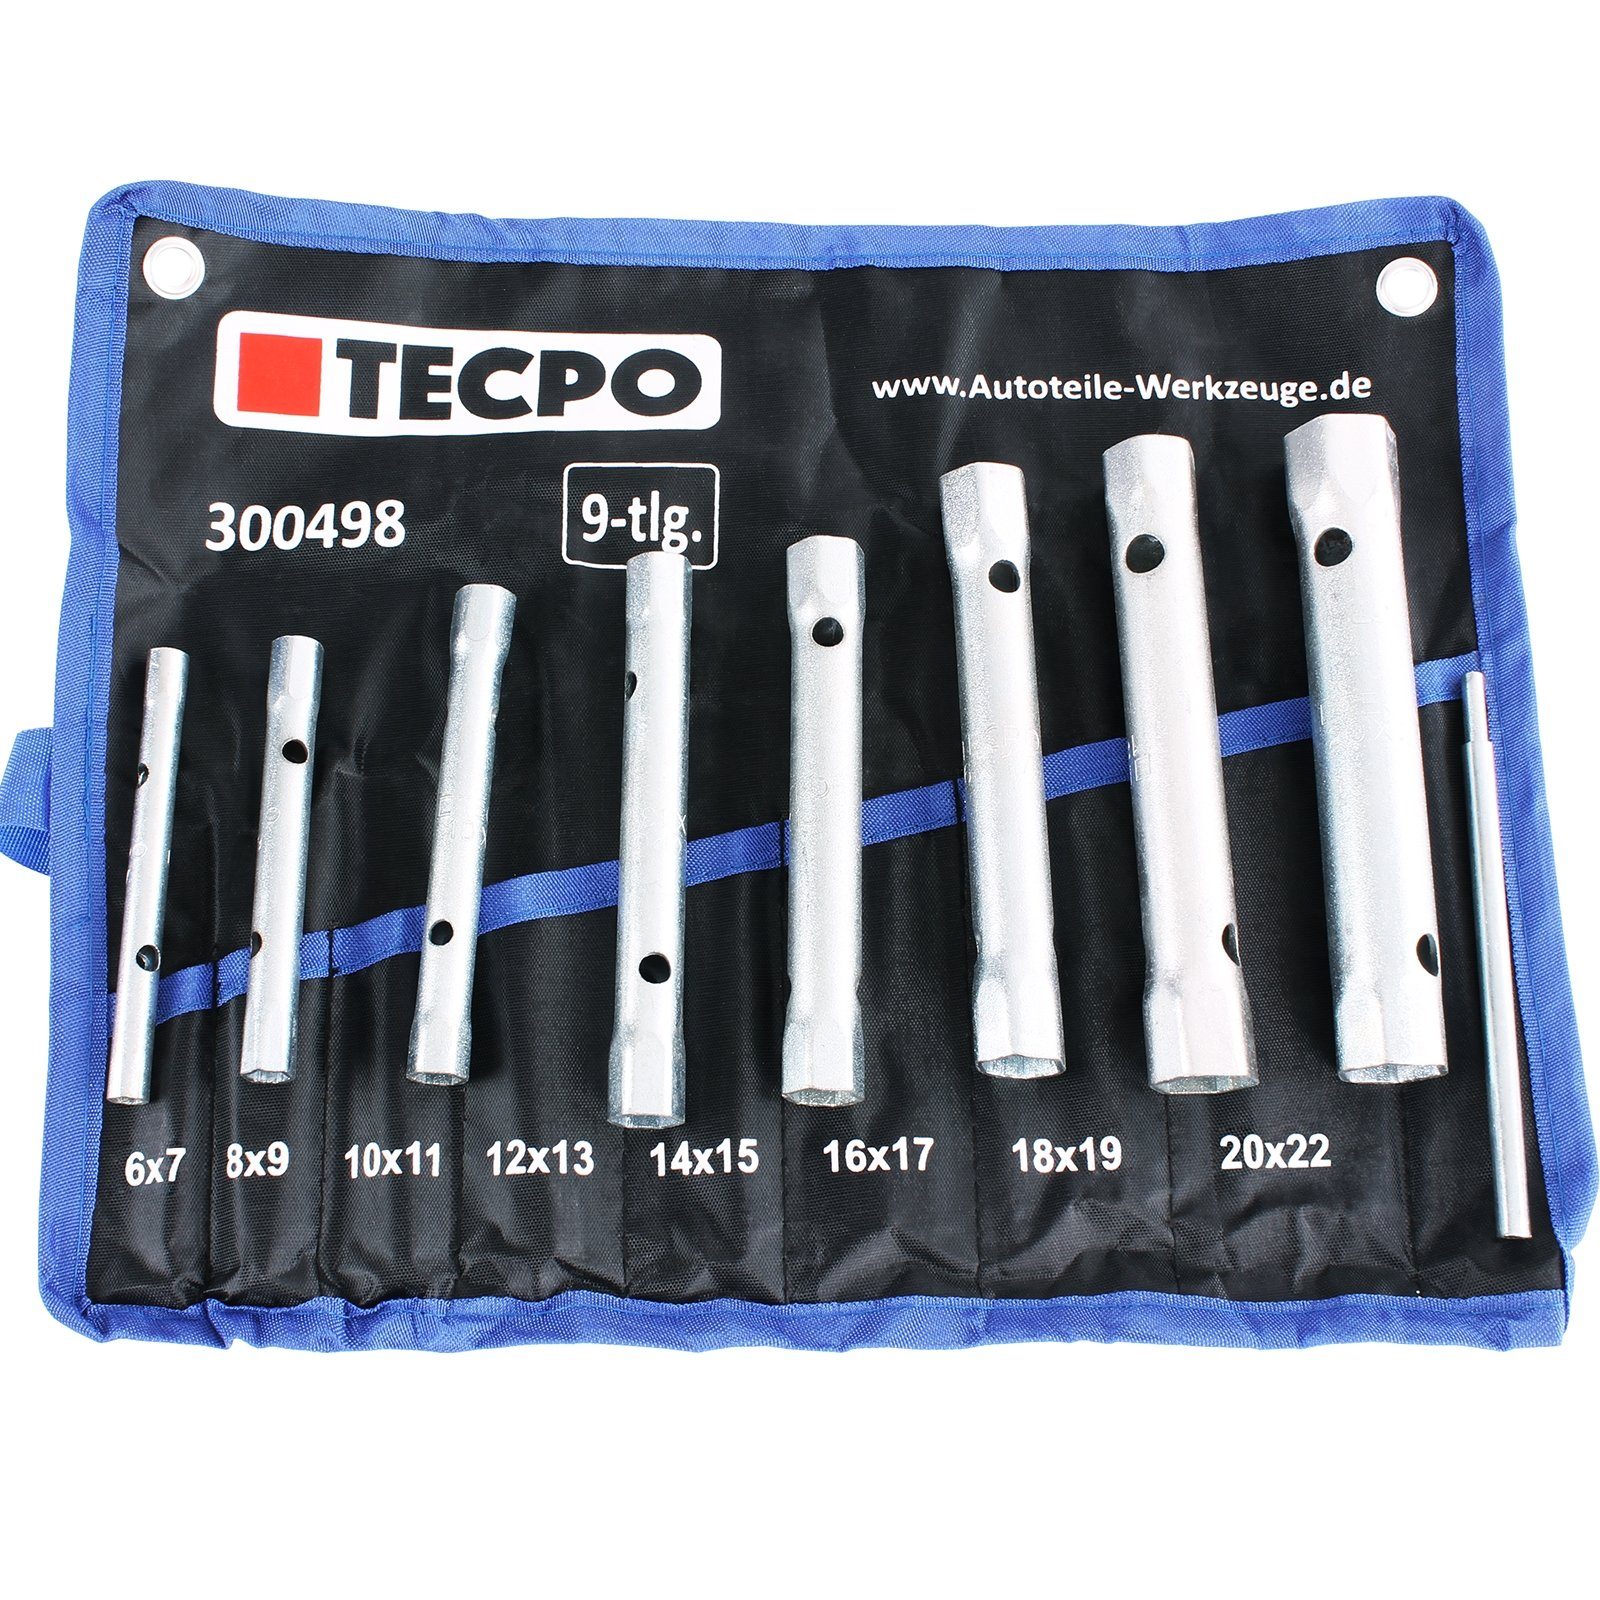 TECPO Steckschlüssel Satz, 6x7-20x22 mm, 9-tlg.